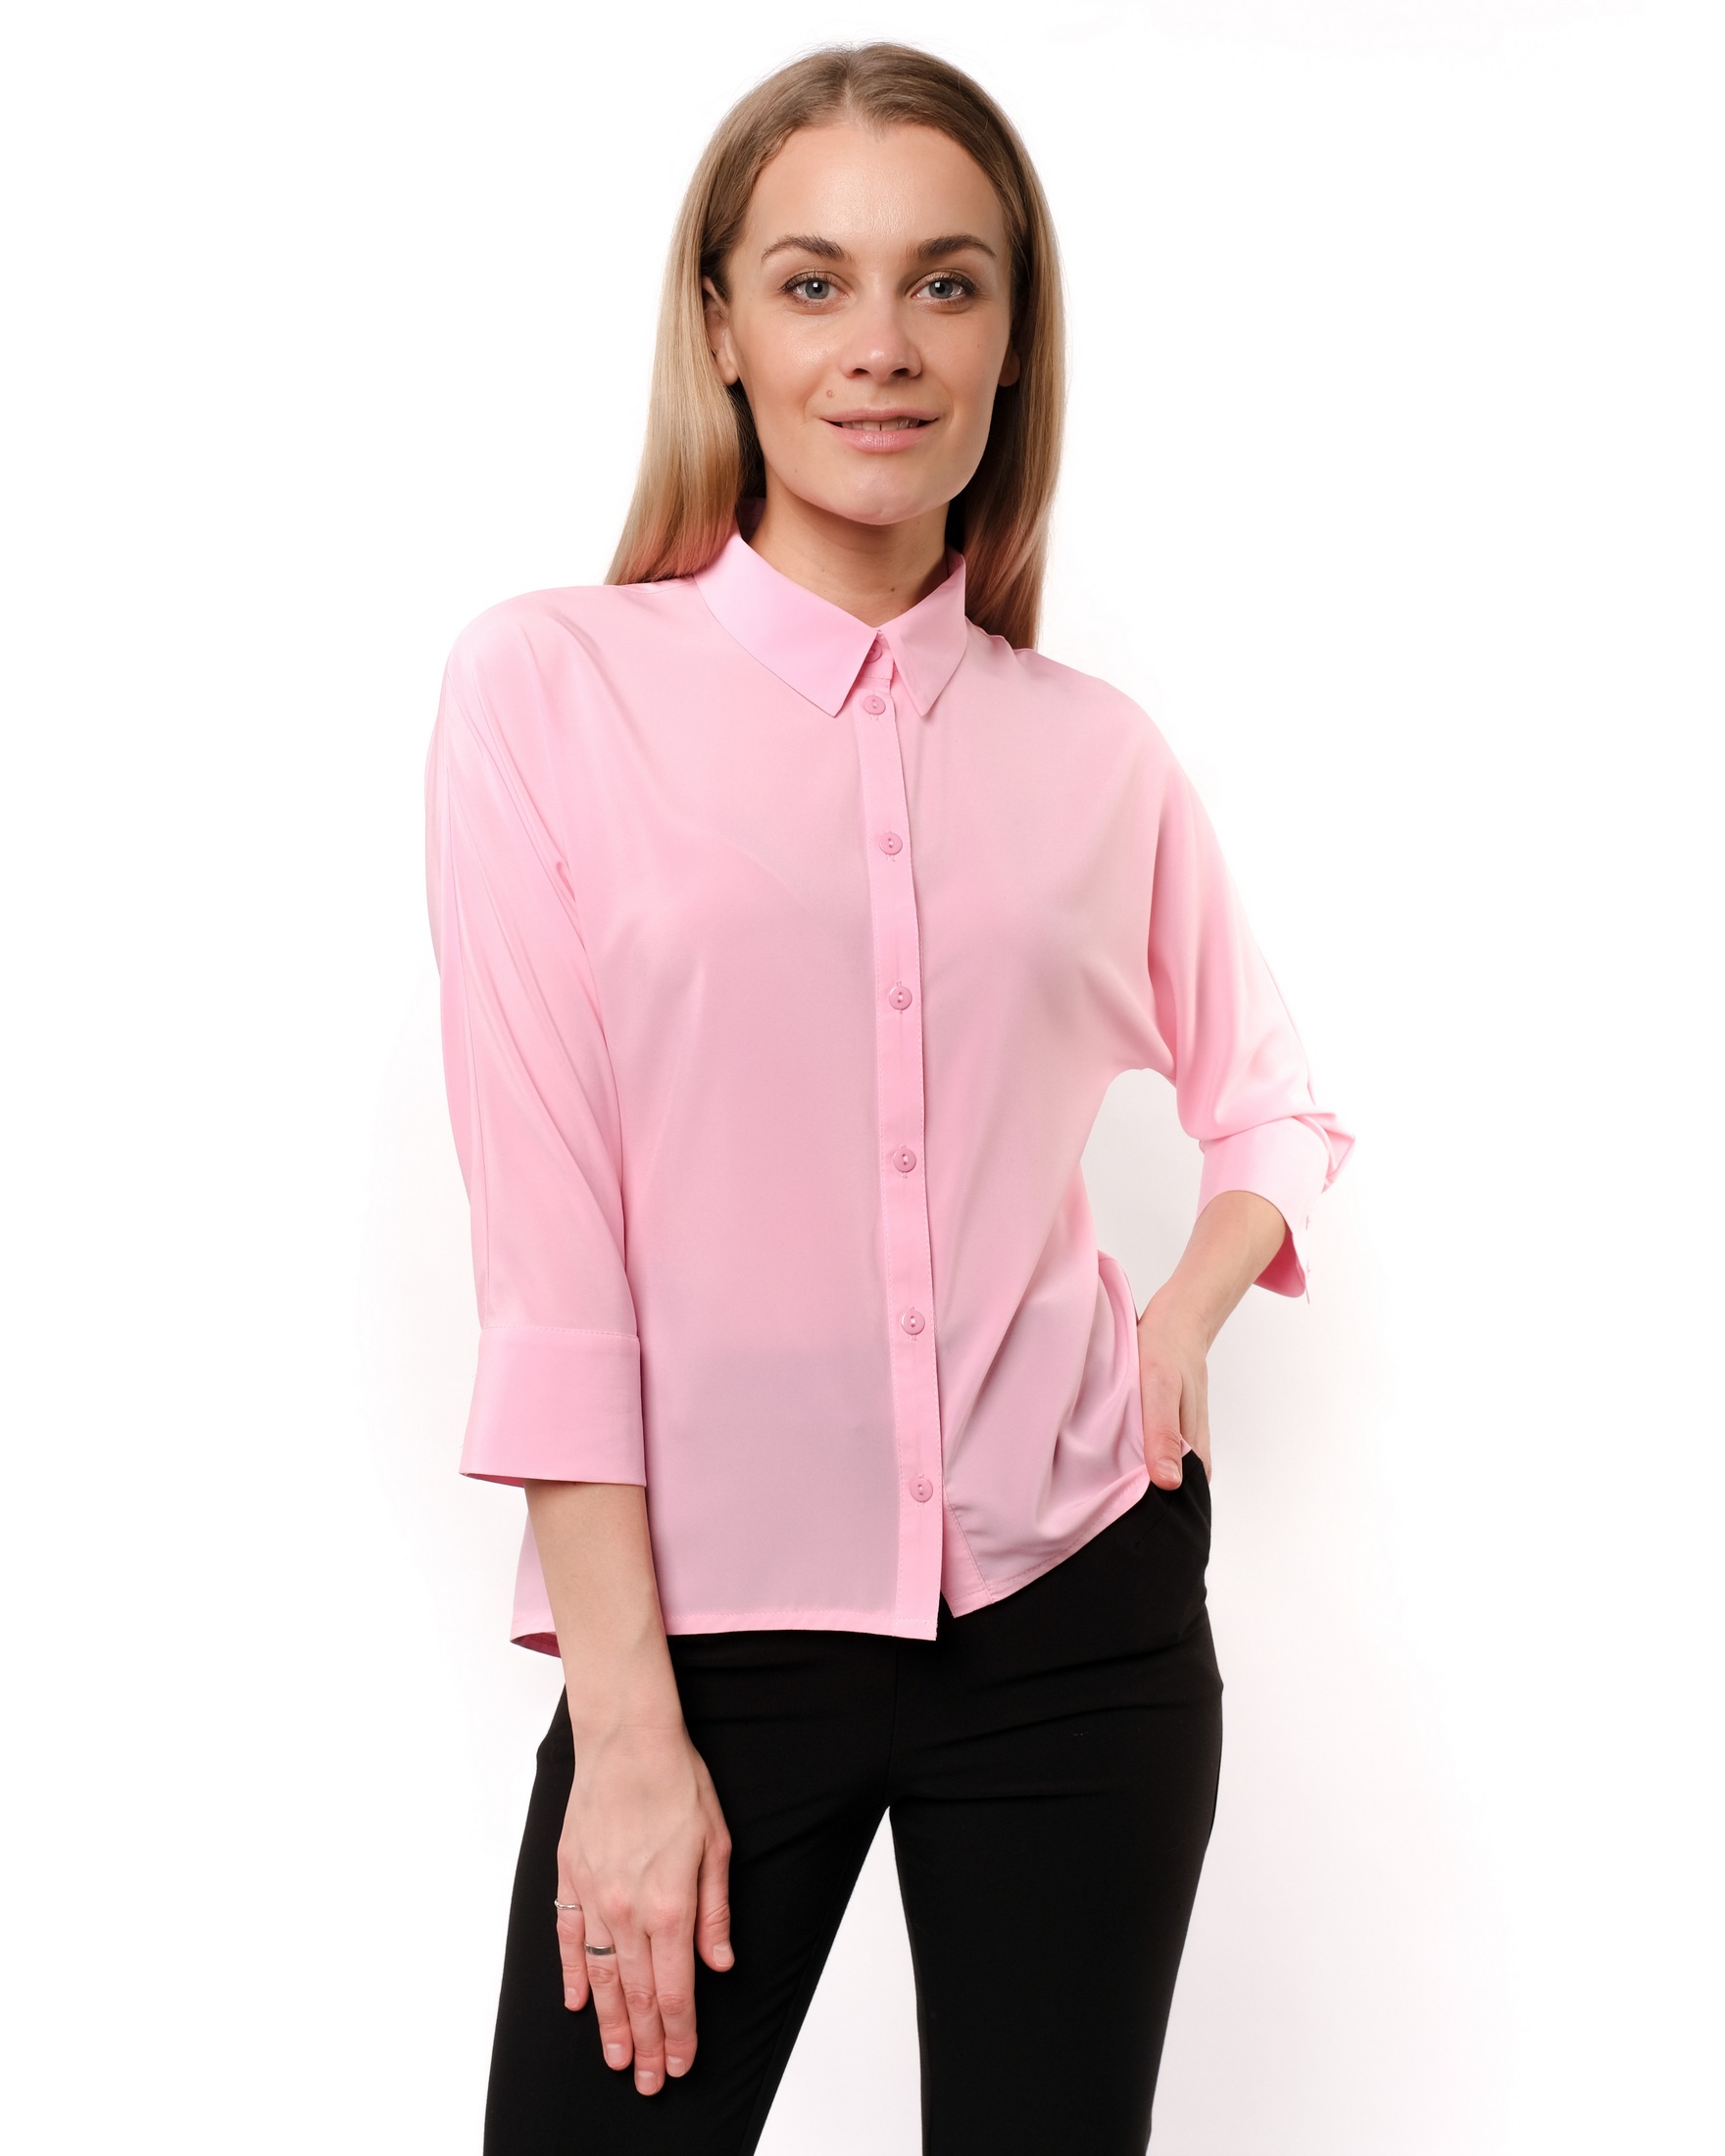 Базовая блузка. Блуза с цельнокроеным рукавом. Базовая блуза. Базовая блузка женская. Базовые блузы в офис.